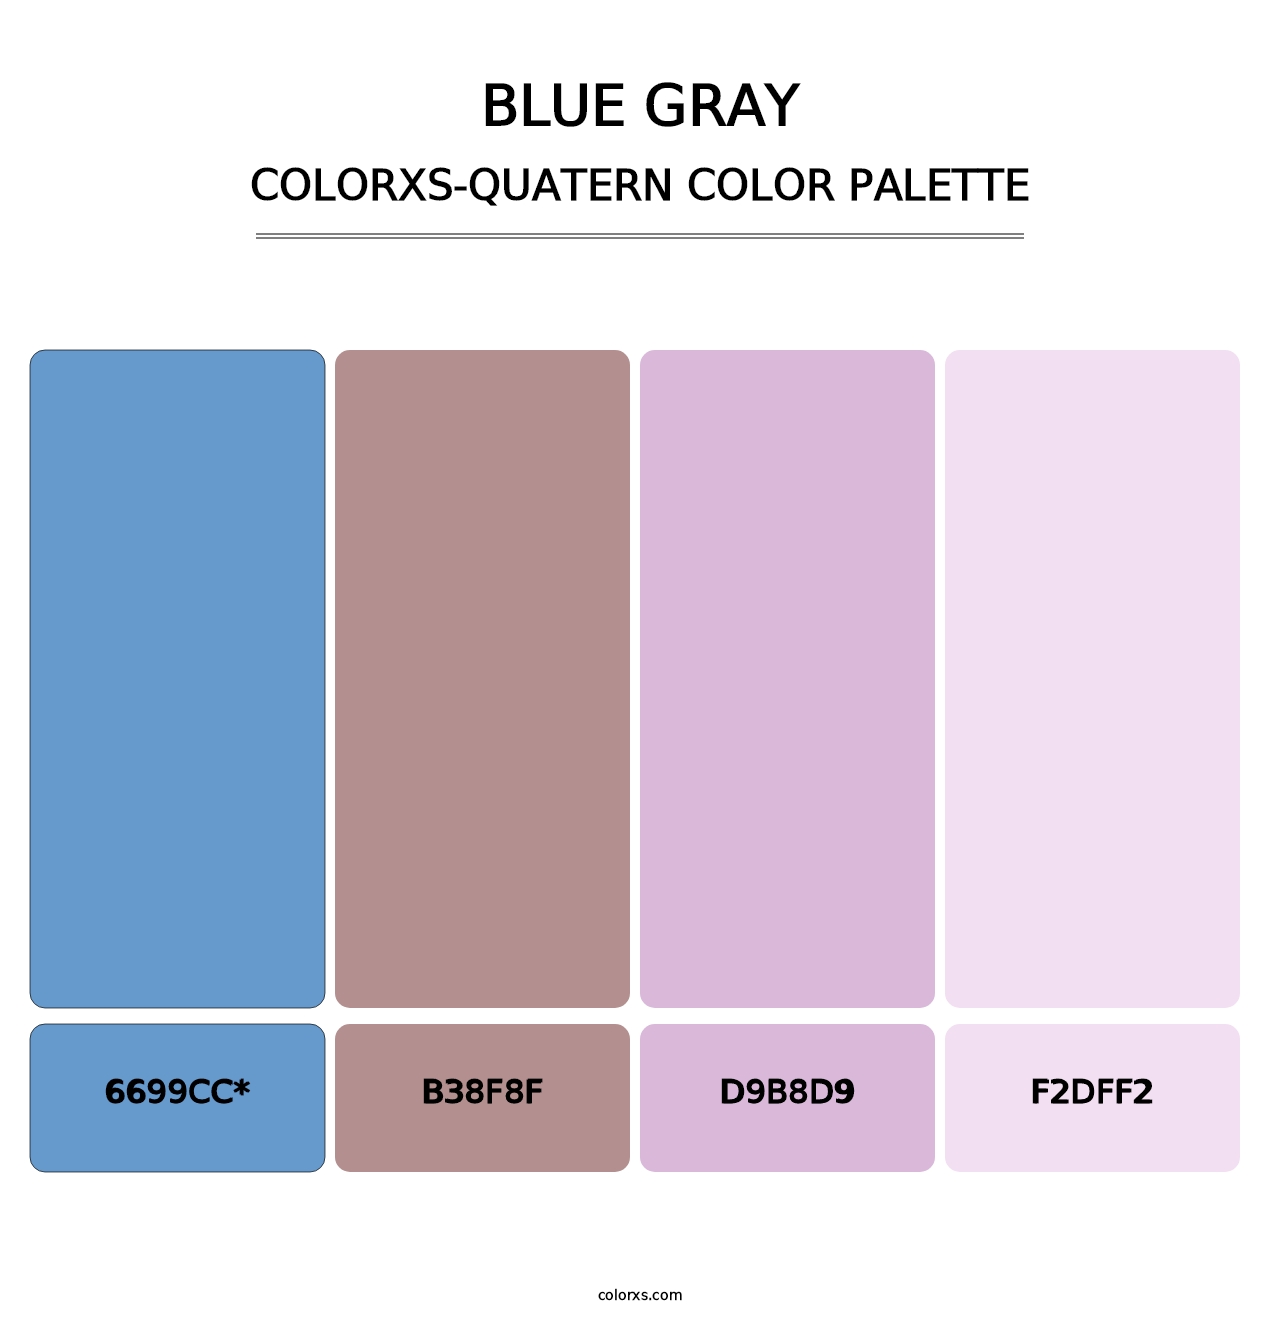 Blue Gray - Colorxs Quatern Palette